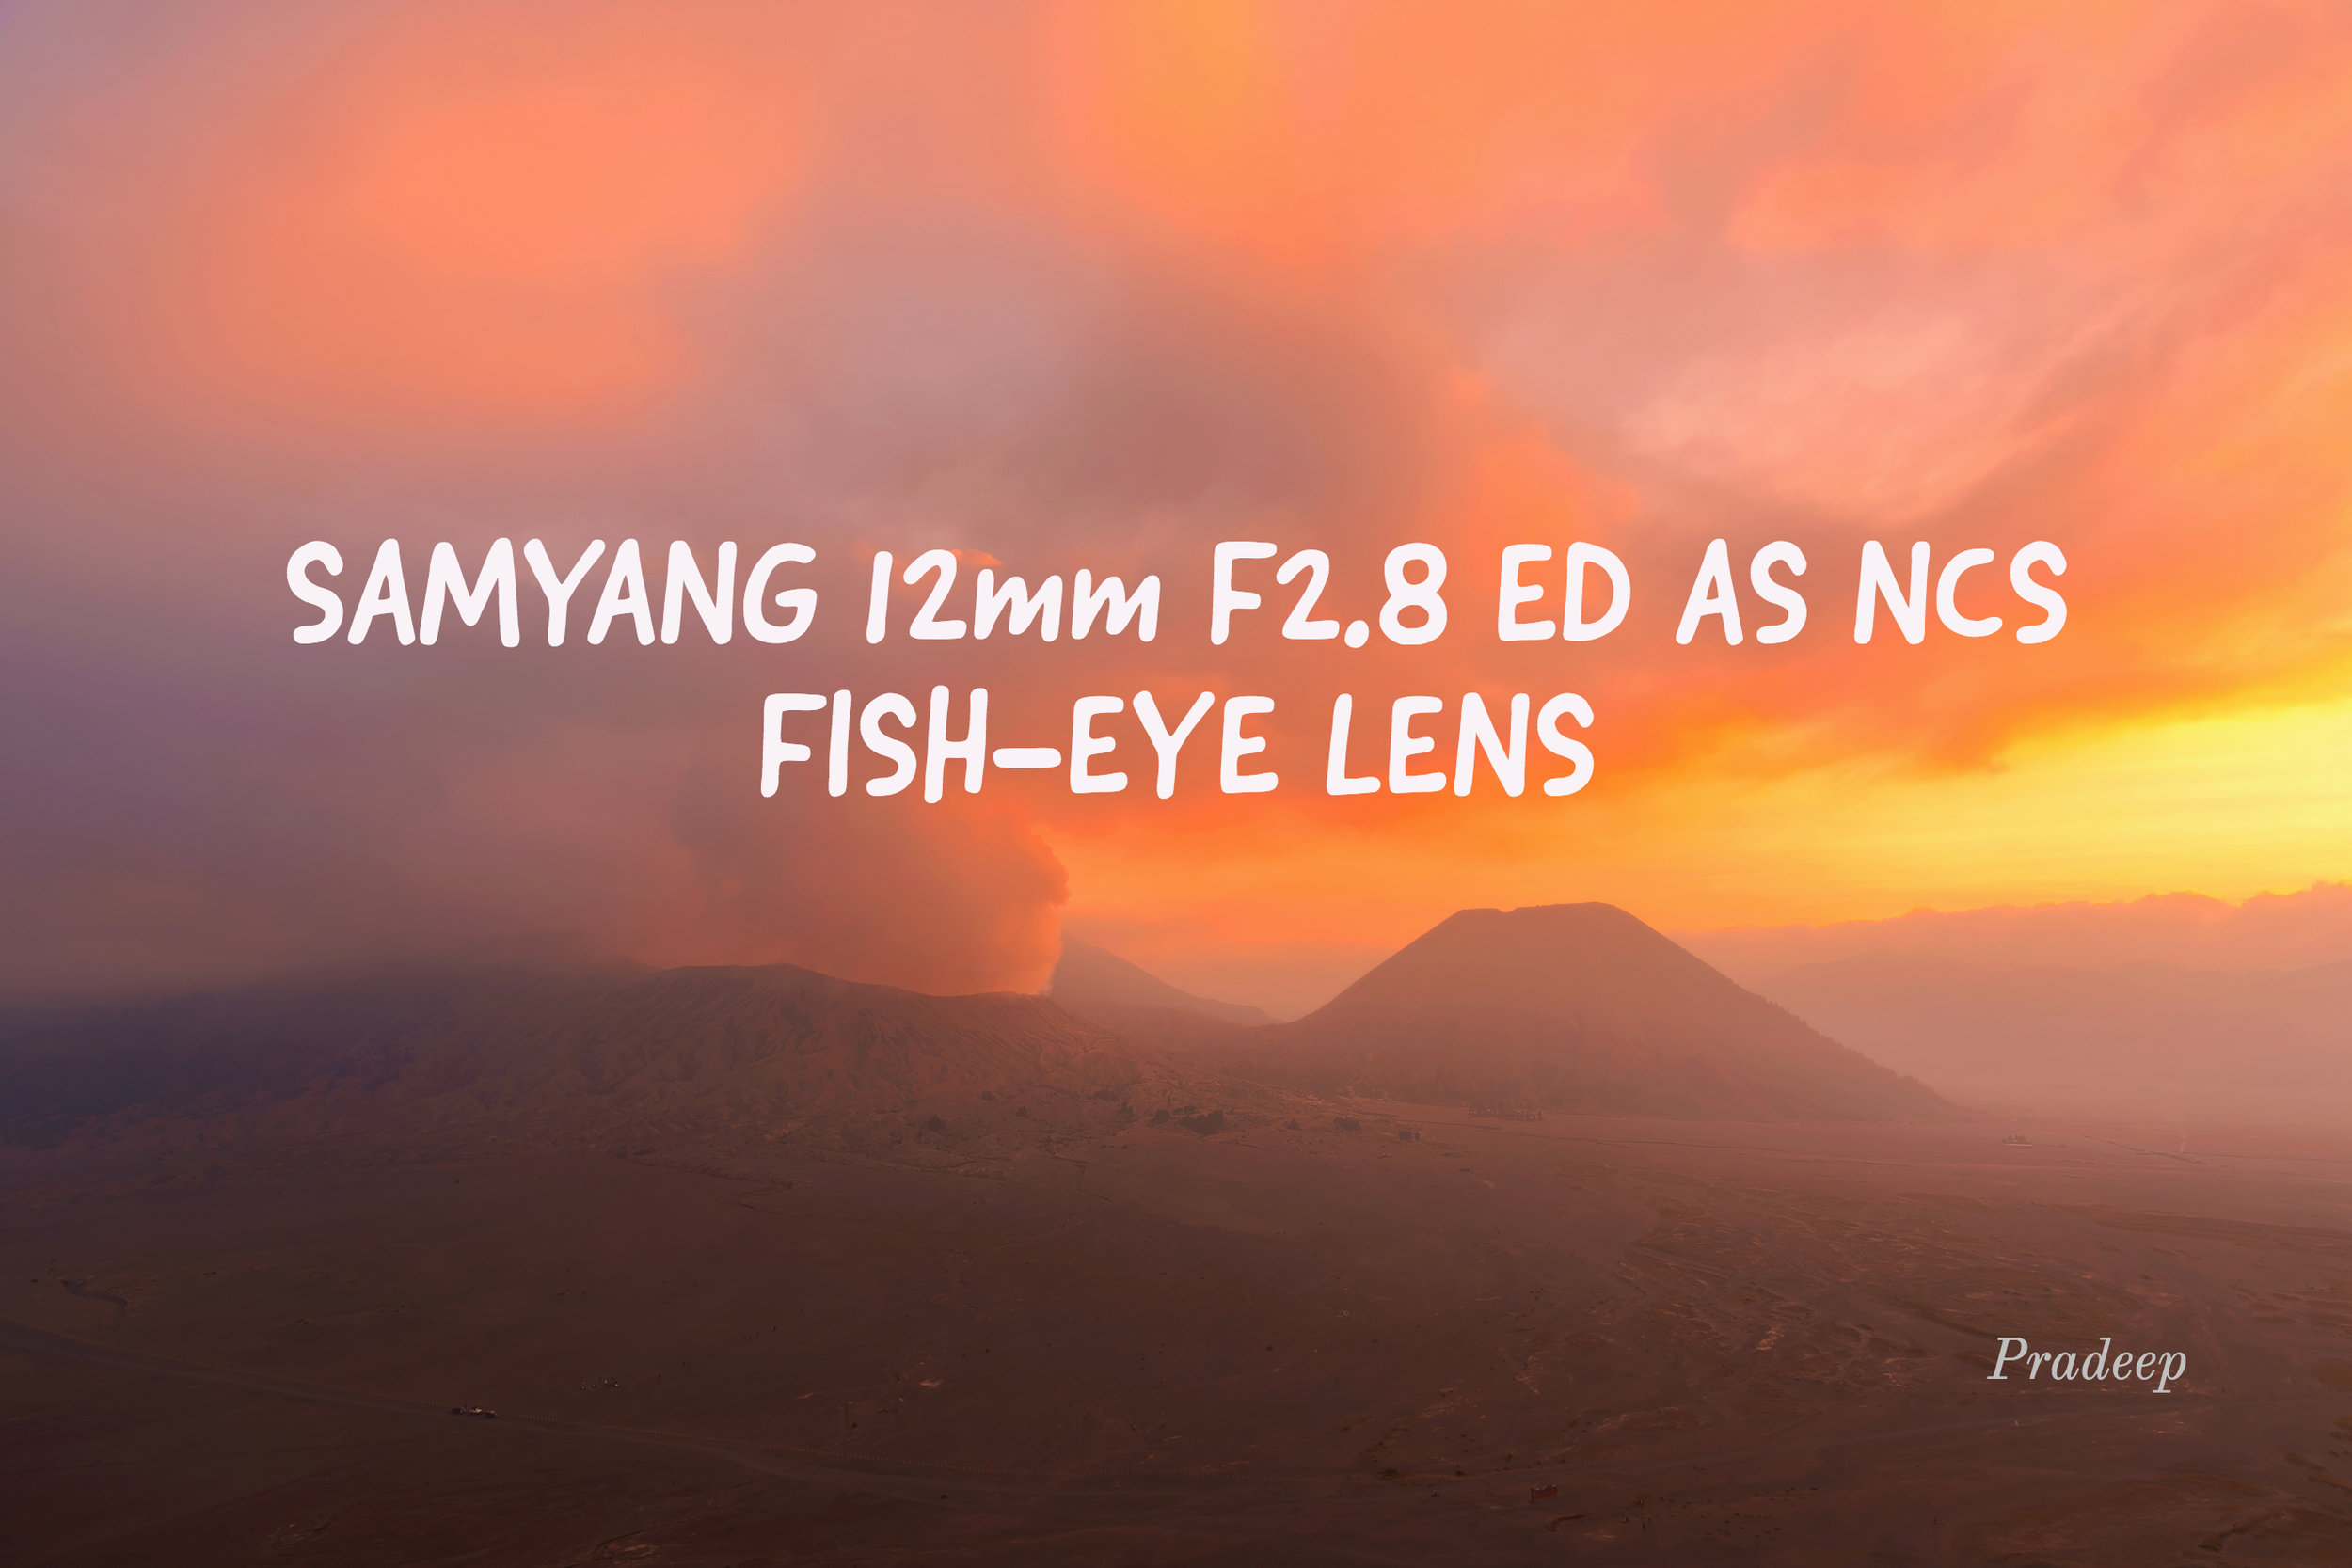 Samyang 12mm F2.8 ED AS NCS Fish-eye and why I Love this Lens